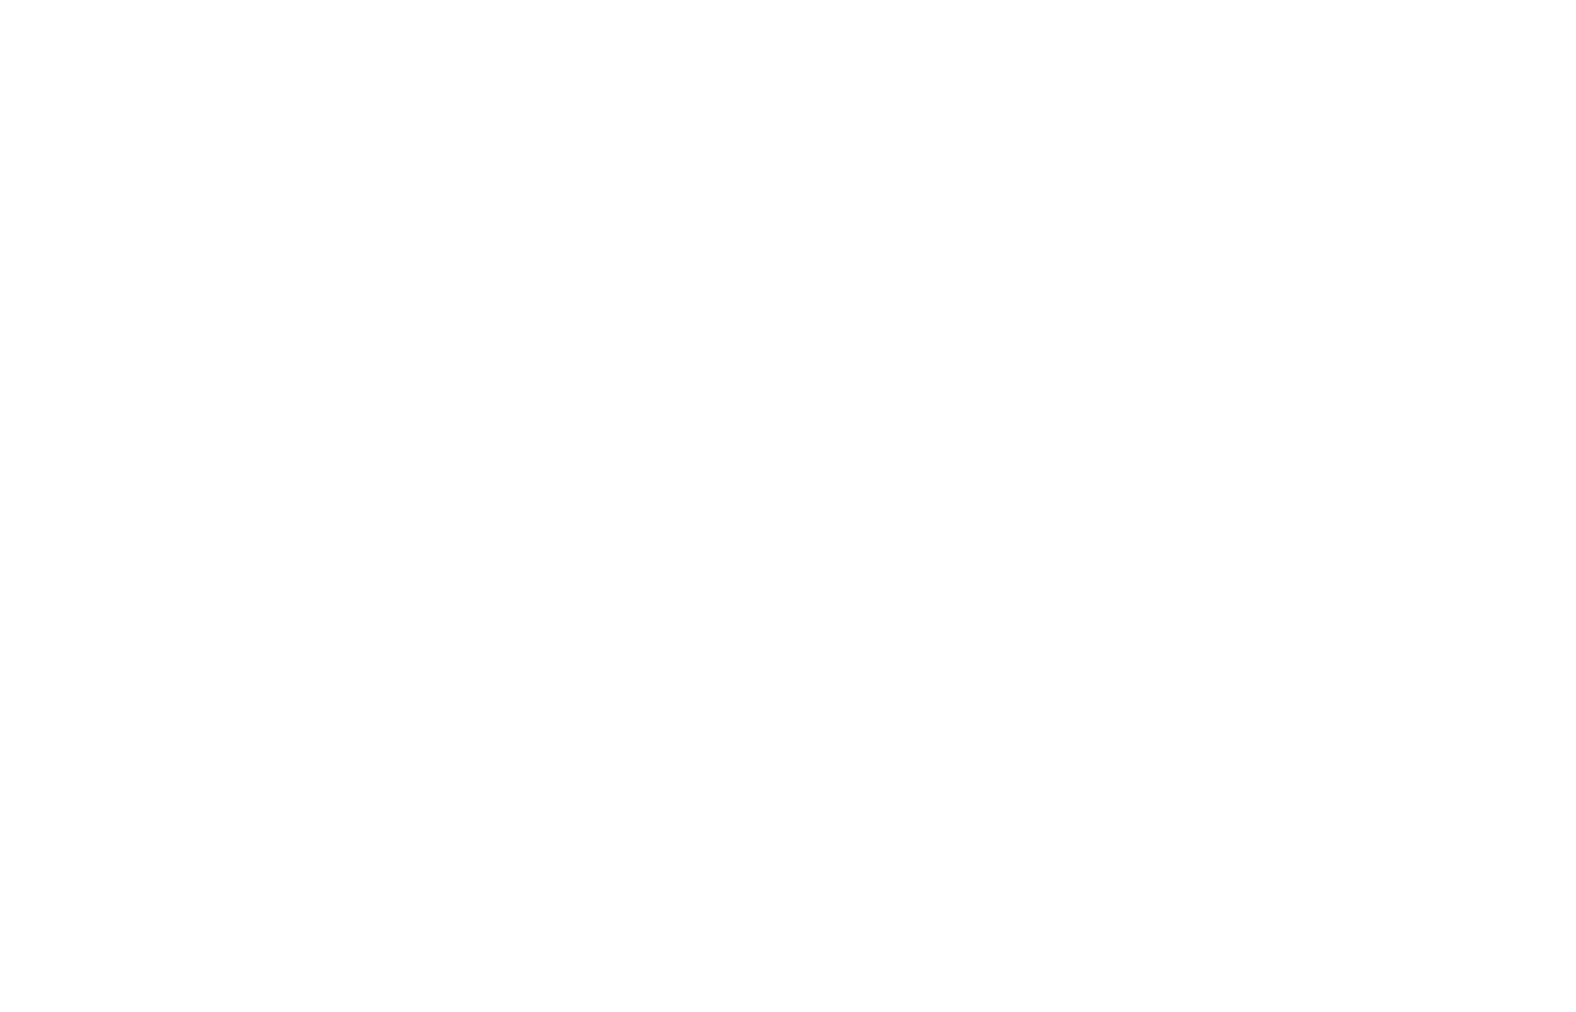 Melco International Development logo pour fonds sombres (PNG transparent)